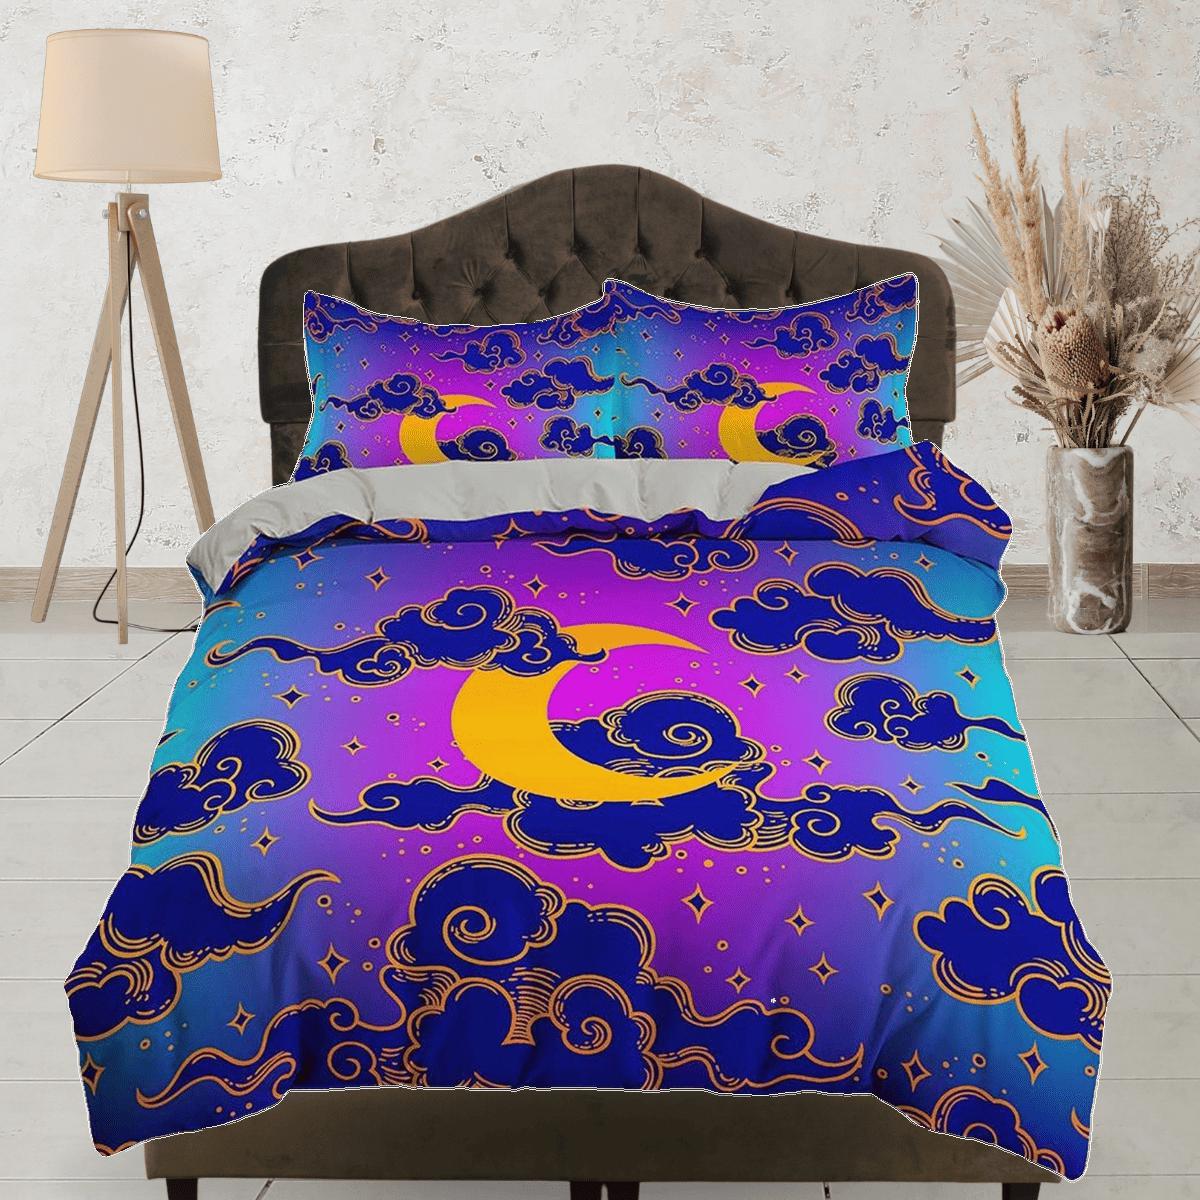 daintyduvet Celestial moon bedding, anime cloud vaporwave, witchy decor dorm bedding, aesthetic duvet, boho bedding set full king queen, astrology gifts